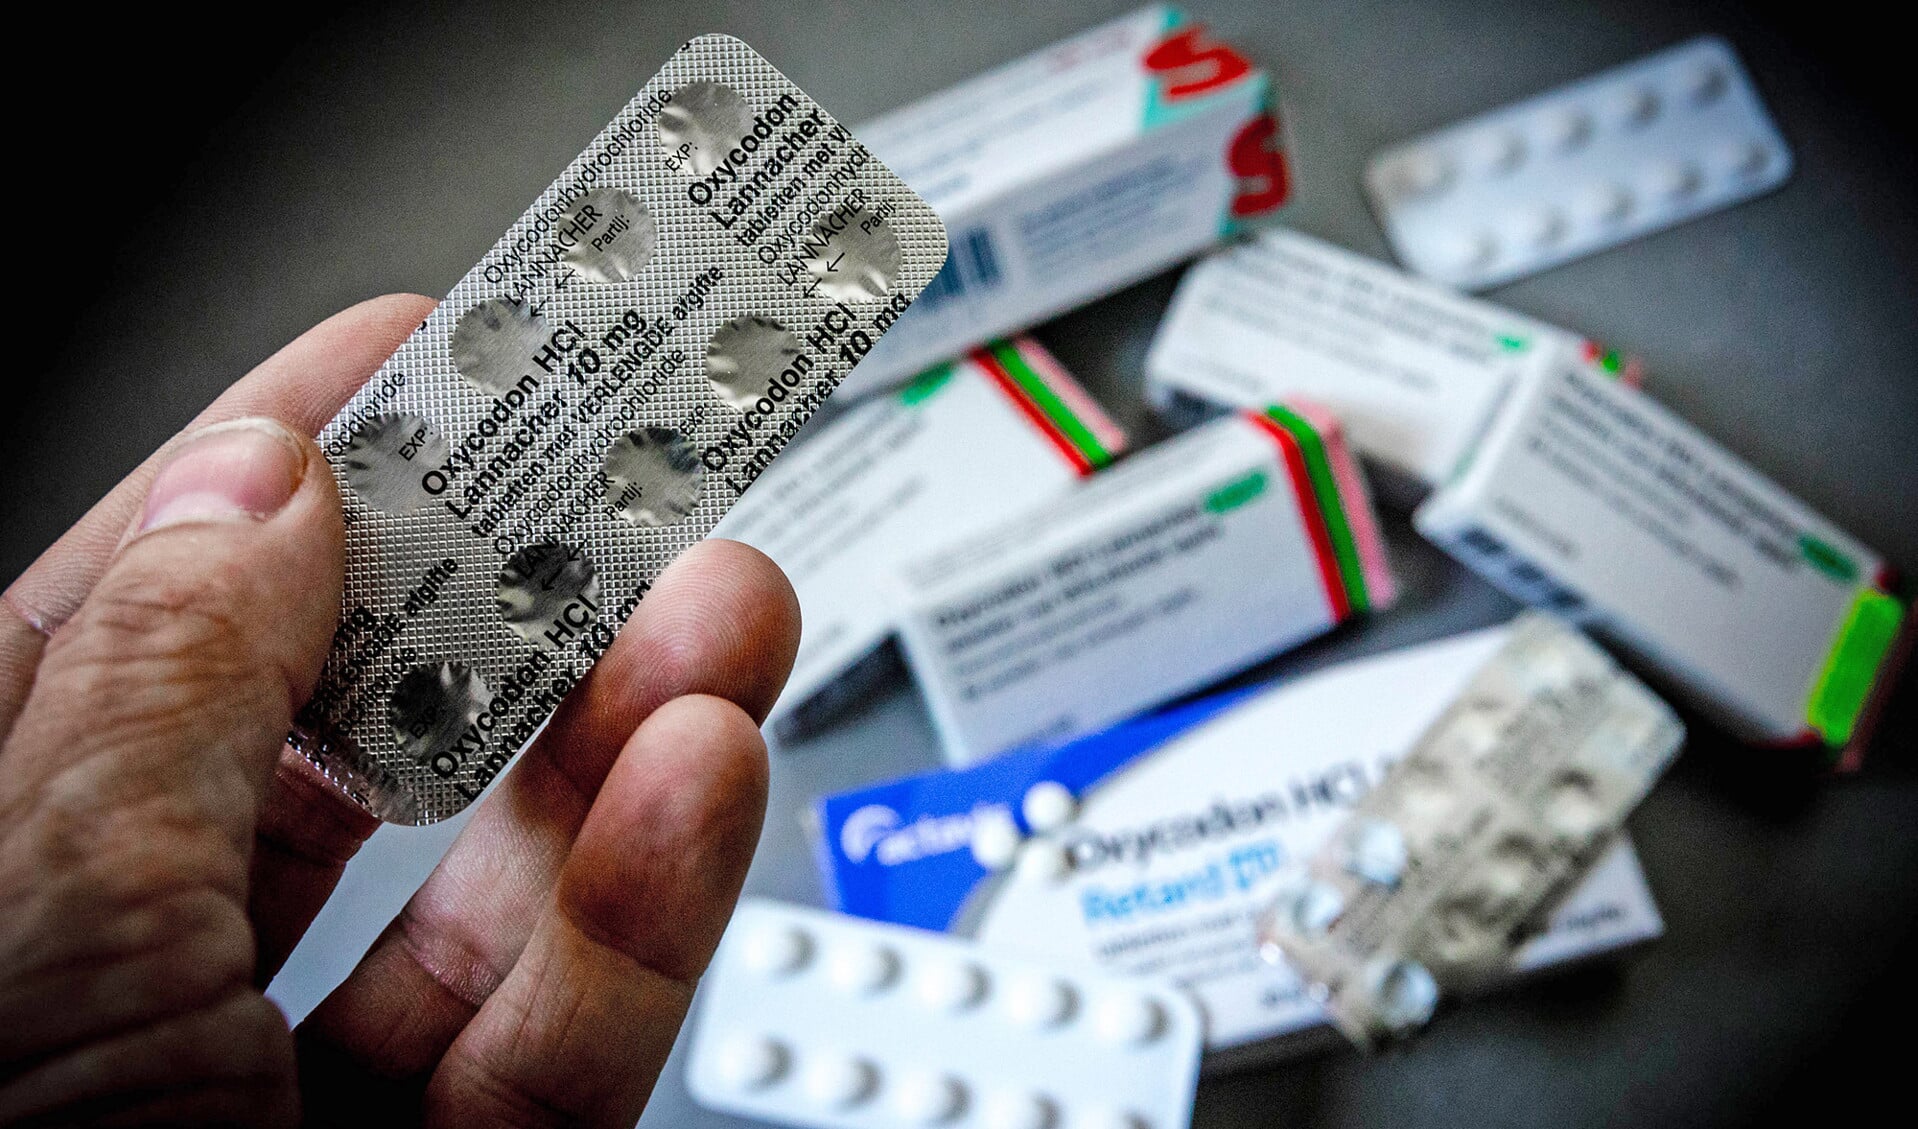 In Nederland wordt ieder jaar voor miljoenen euro’s aan medicijnen vernietigd. Dat zou voor een deel voorkomen kunnen worden door kleinere hoeveelheden uit te geven of medicijnen opnieuw te gebruiken, zo blijkt uit onderzoek.